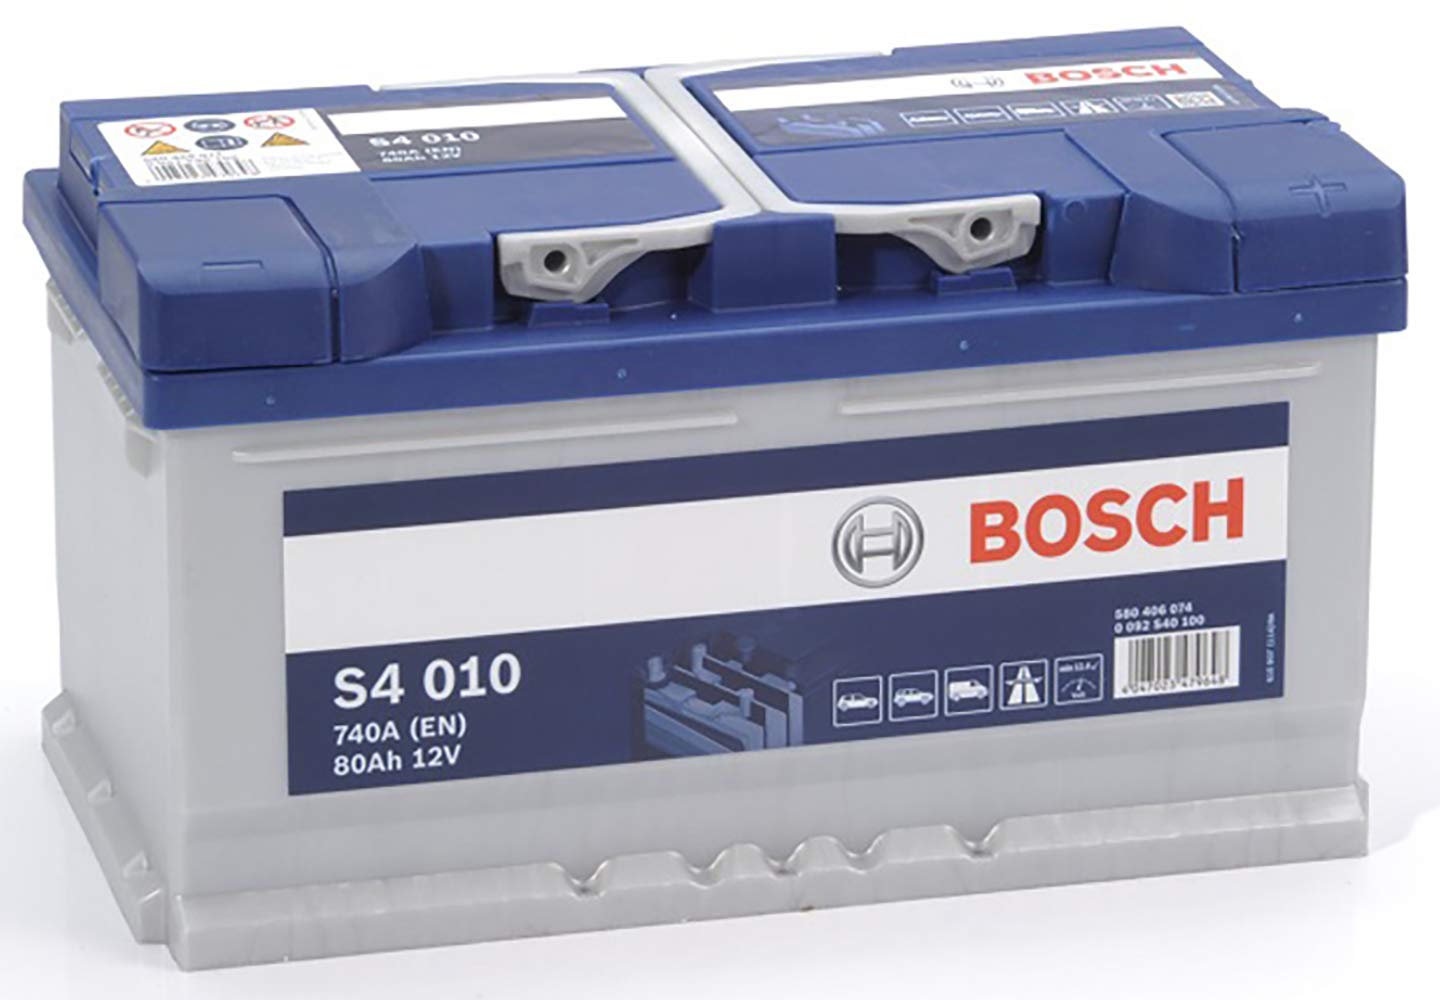 Bosch S4010 - Autobatterie - 80A/h - 740A - Blei-Säure-Technologie - für Fahrzeuge ohne Start-Stopp-System